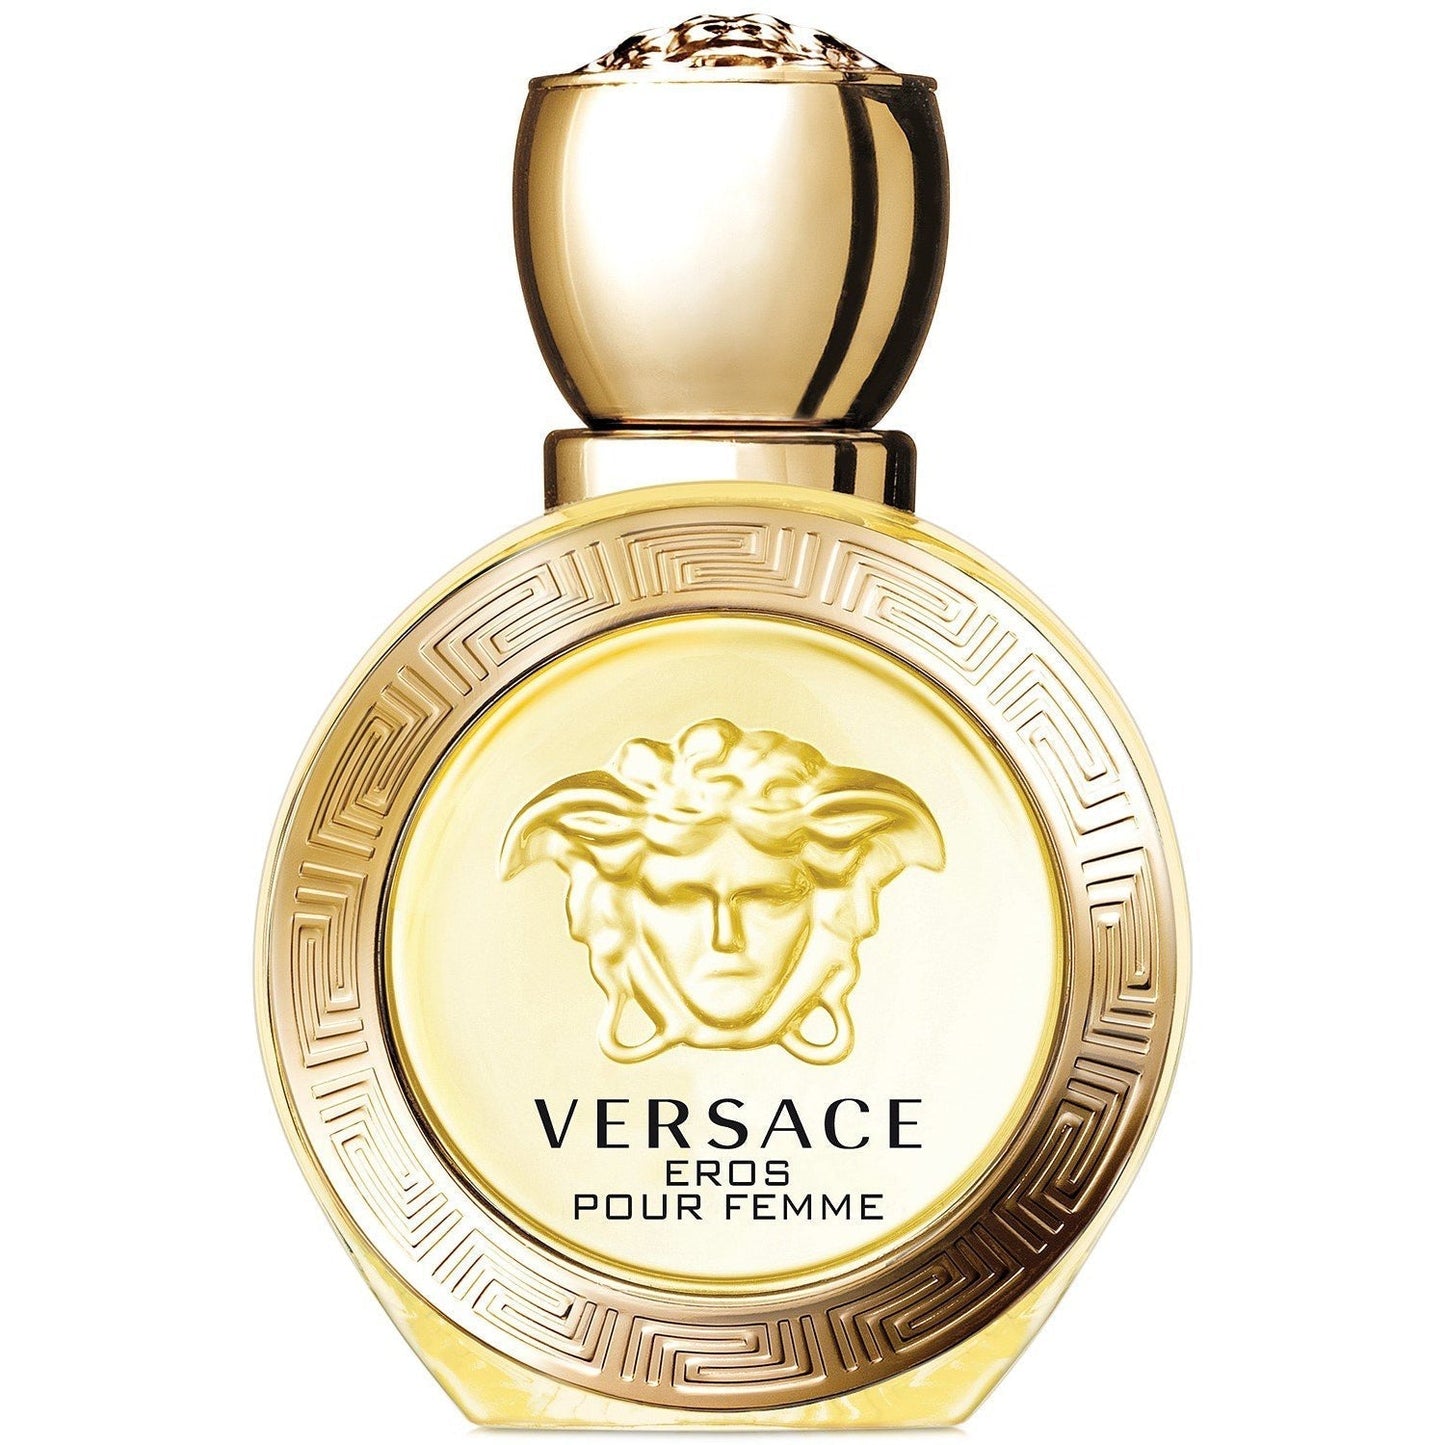 VERSACE - Eros Pour Femme Eau de Parfum, 3.4 oz